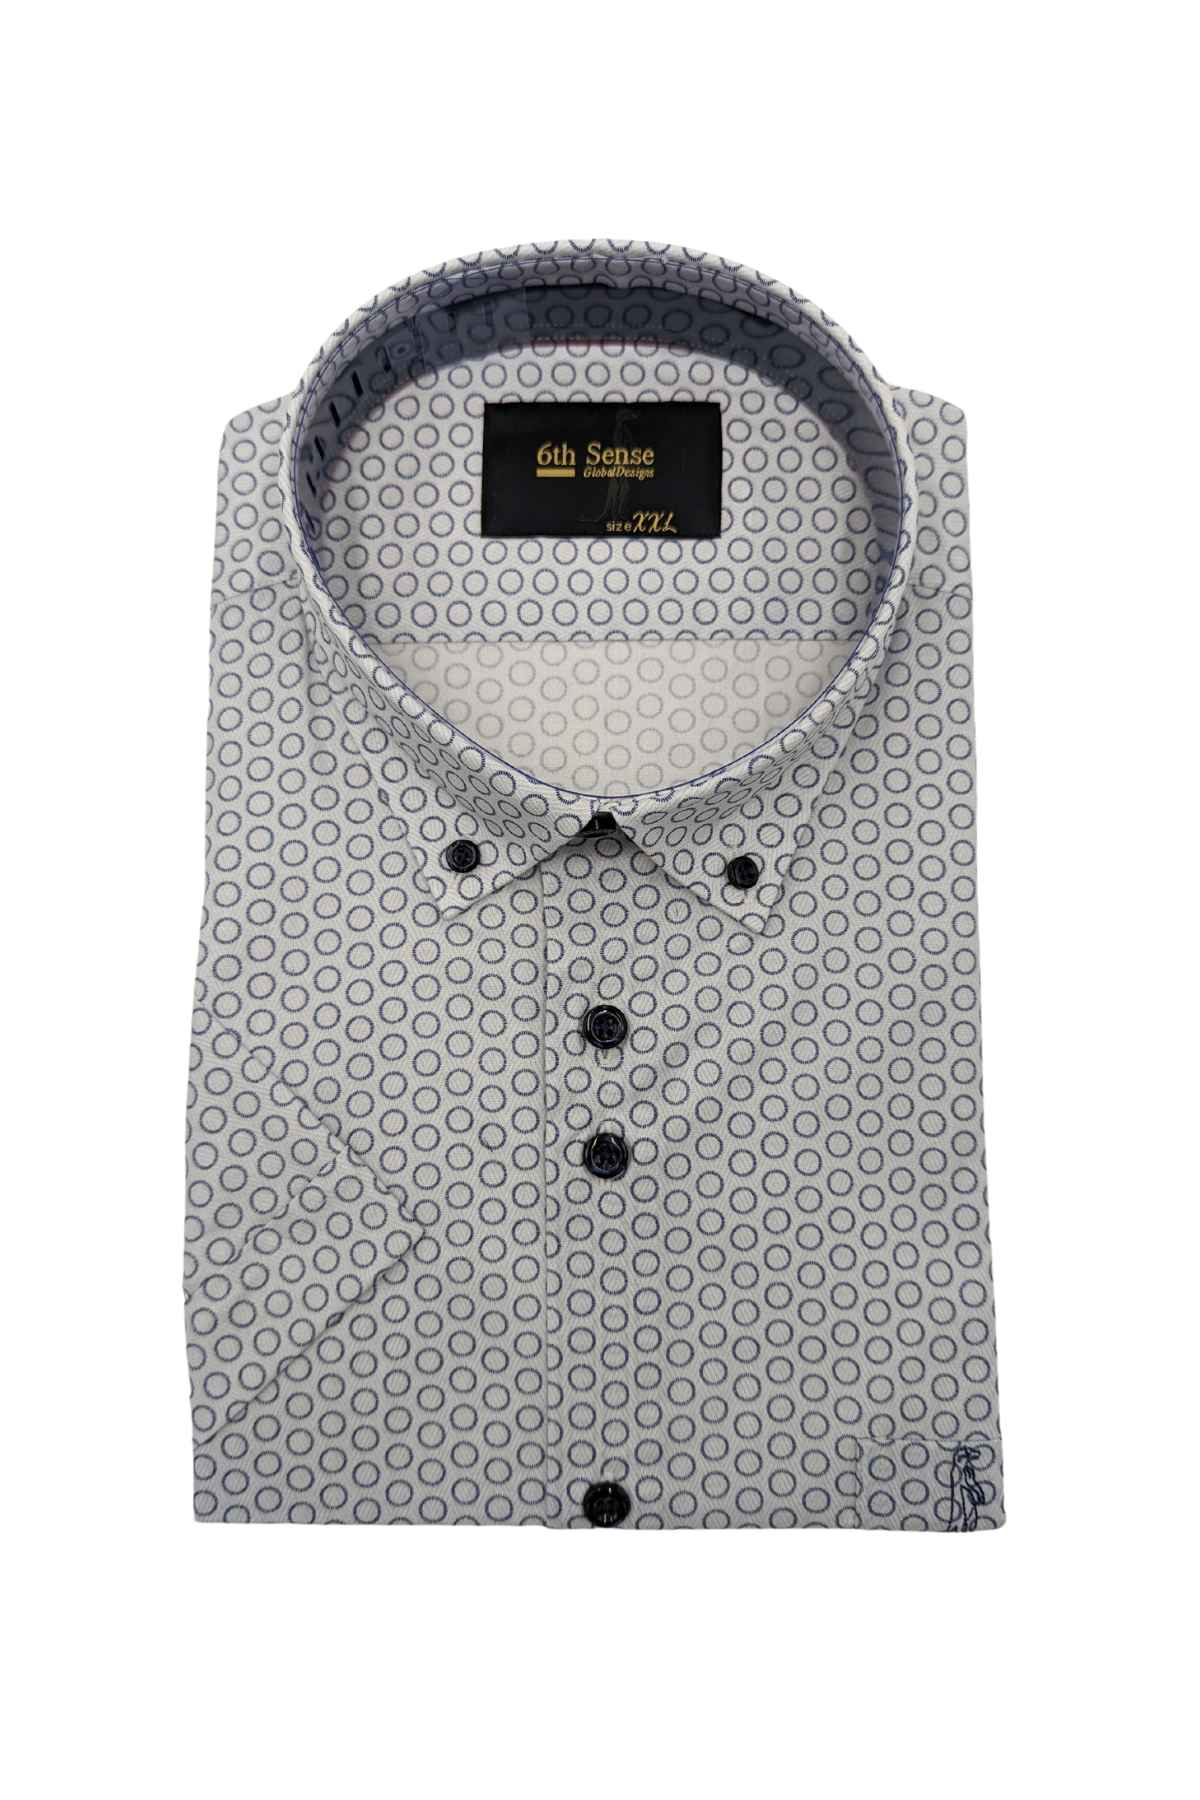 Men's Button Down White/Navy Circle Print Shirt-Front View